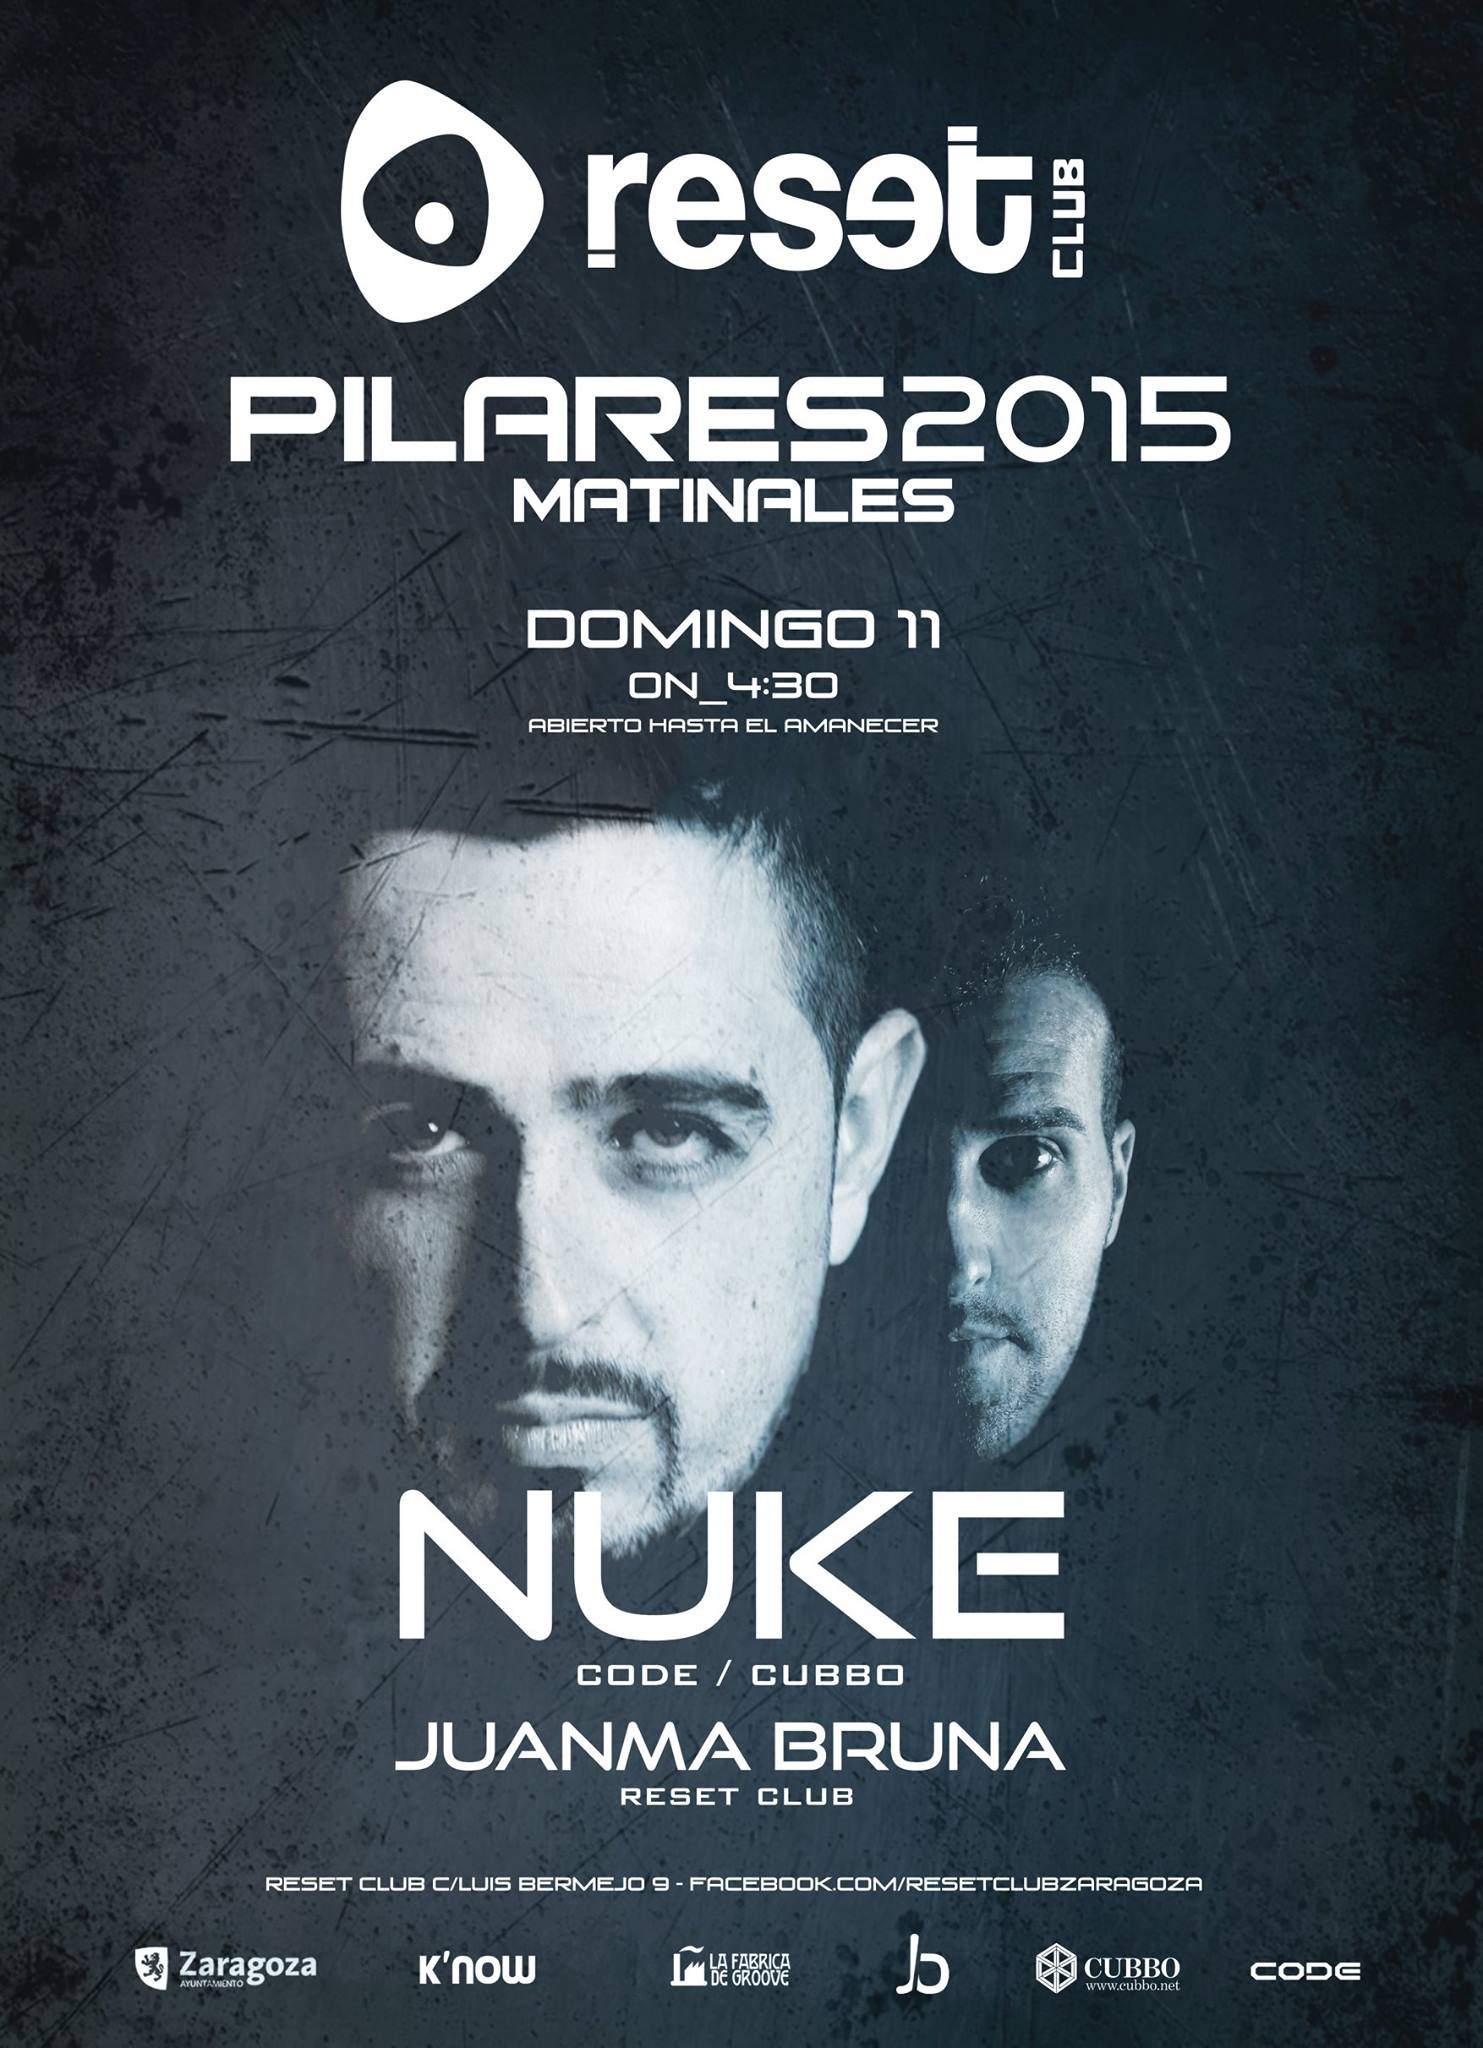 nuke-juanma-bruna-reset-club-techno-after-pilares-matinal-zaragoza-2015